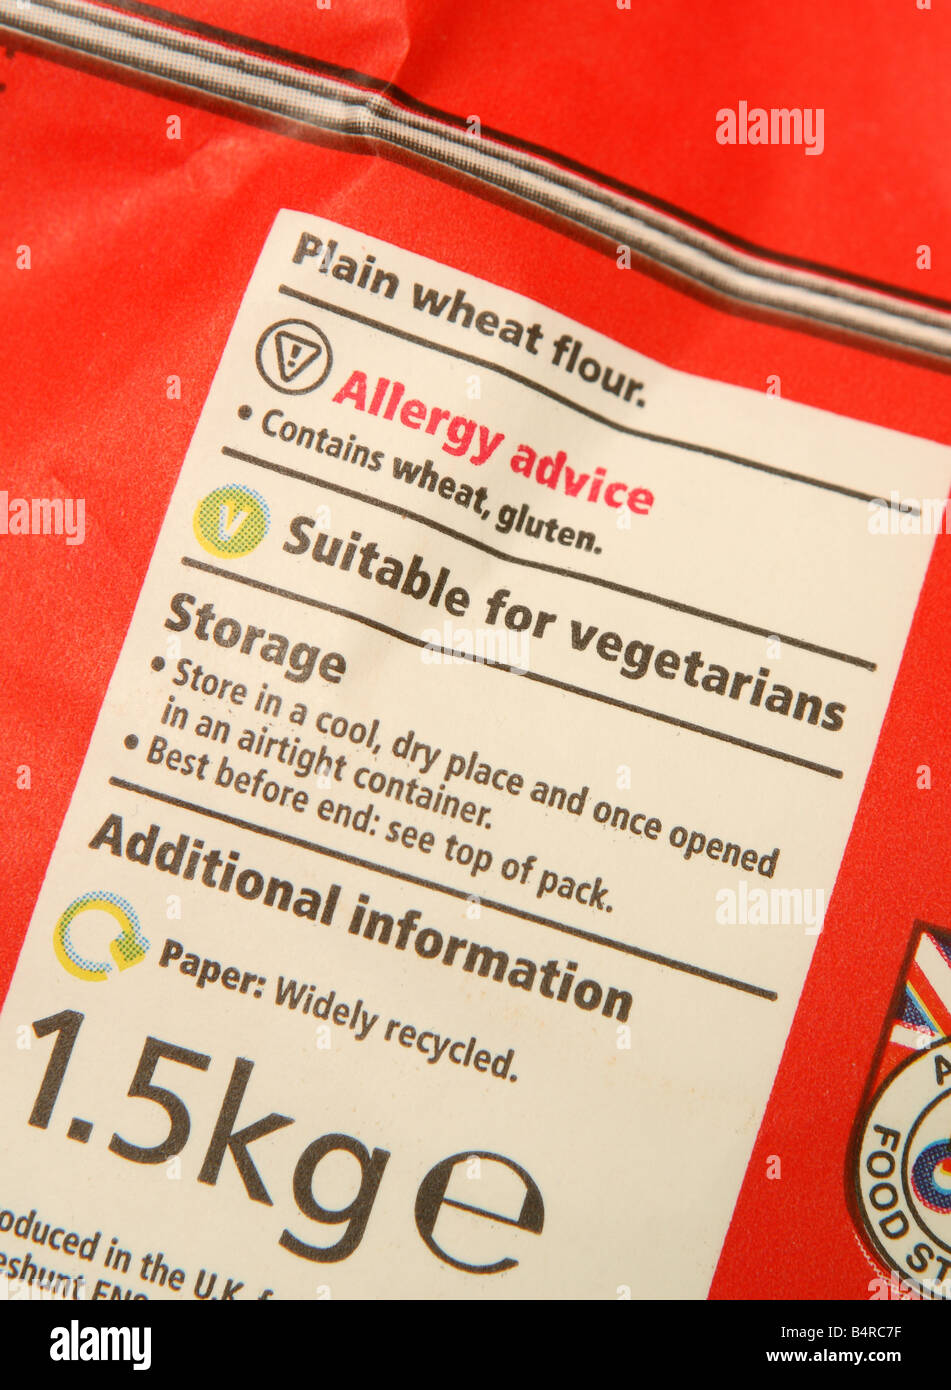 La alergia alimentaria contenido del embalaje del producto con la etiqueta de advertencia de asesoramiento sobre paquete de harina de trigo Foto de stock